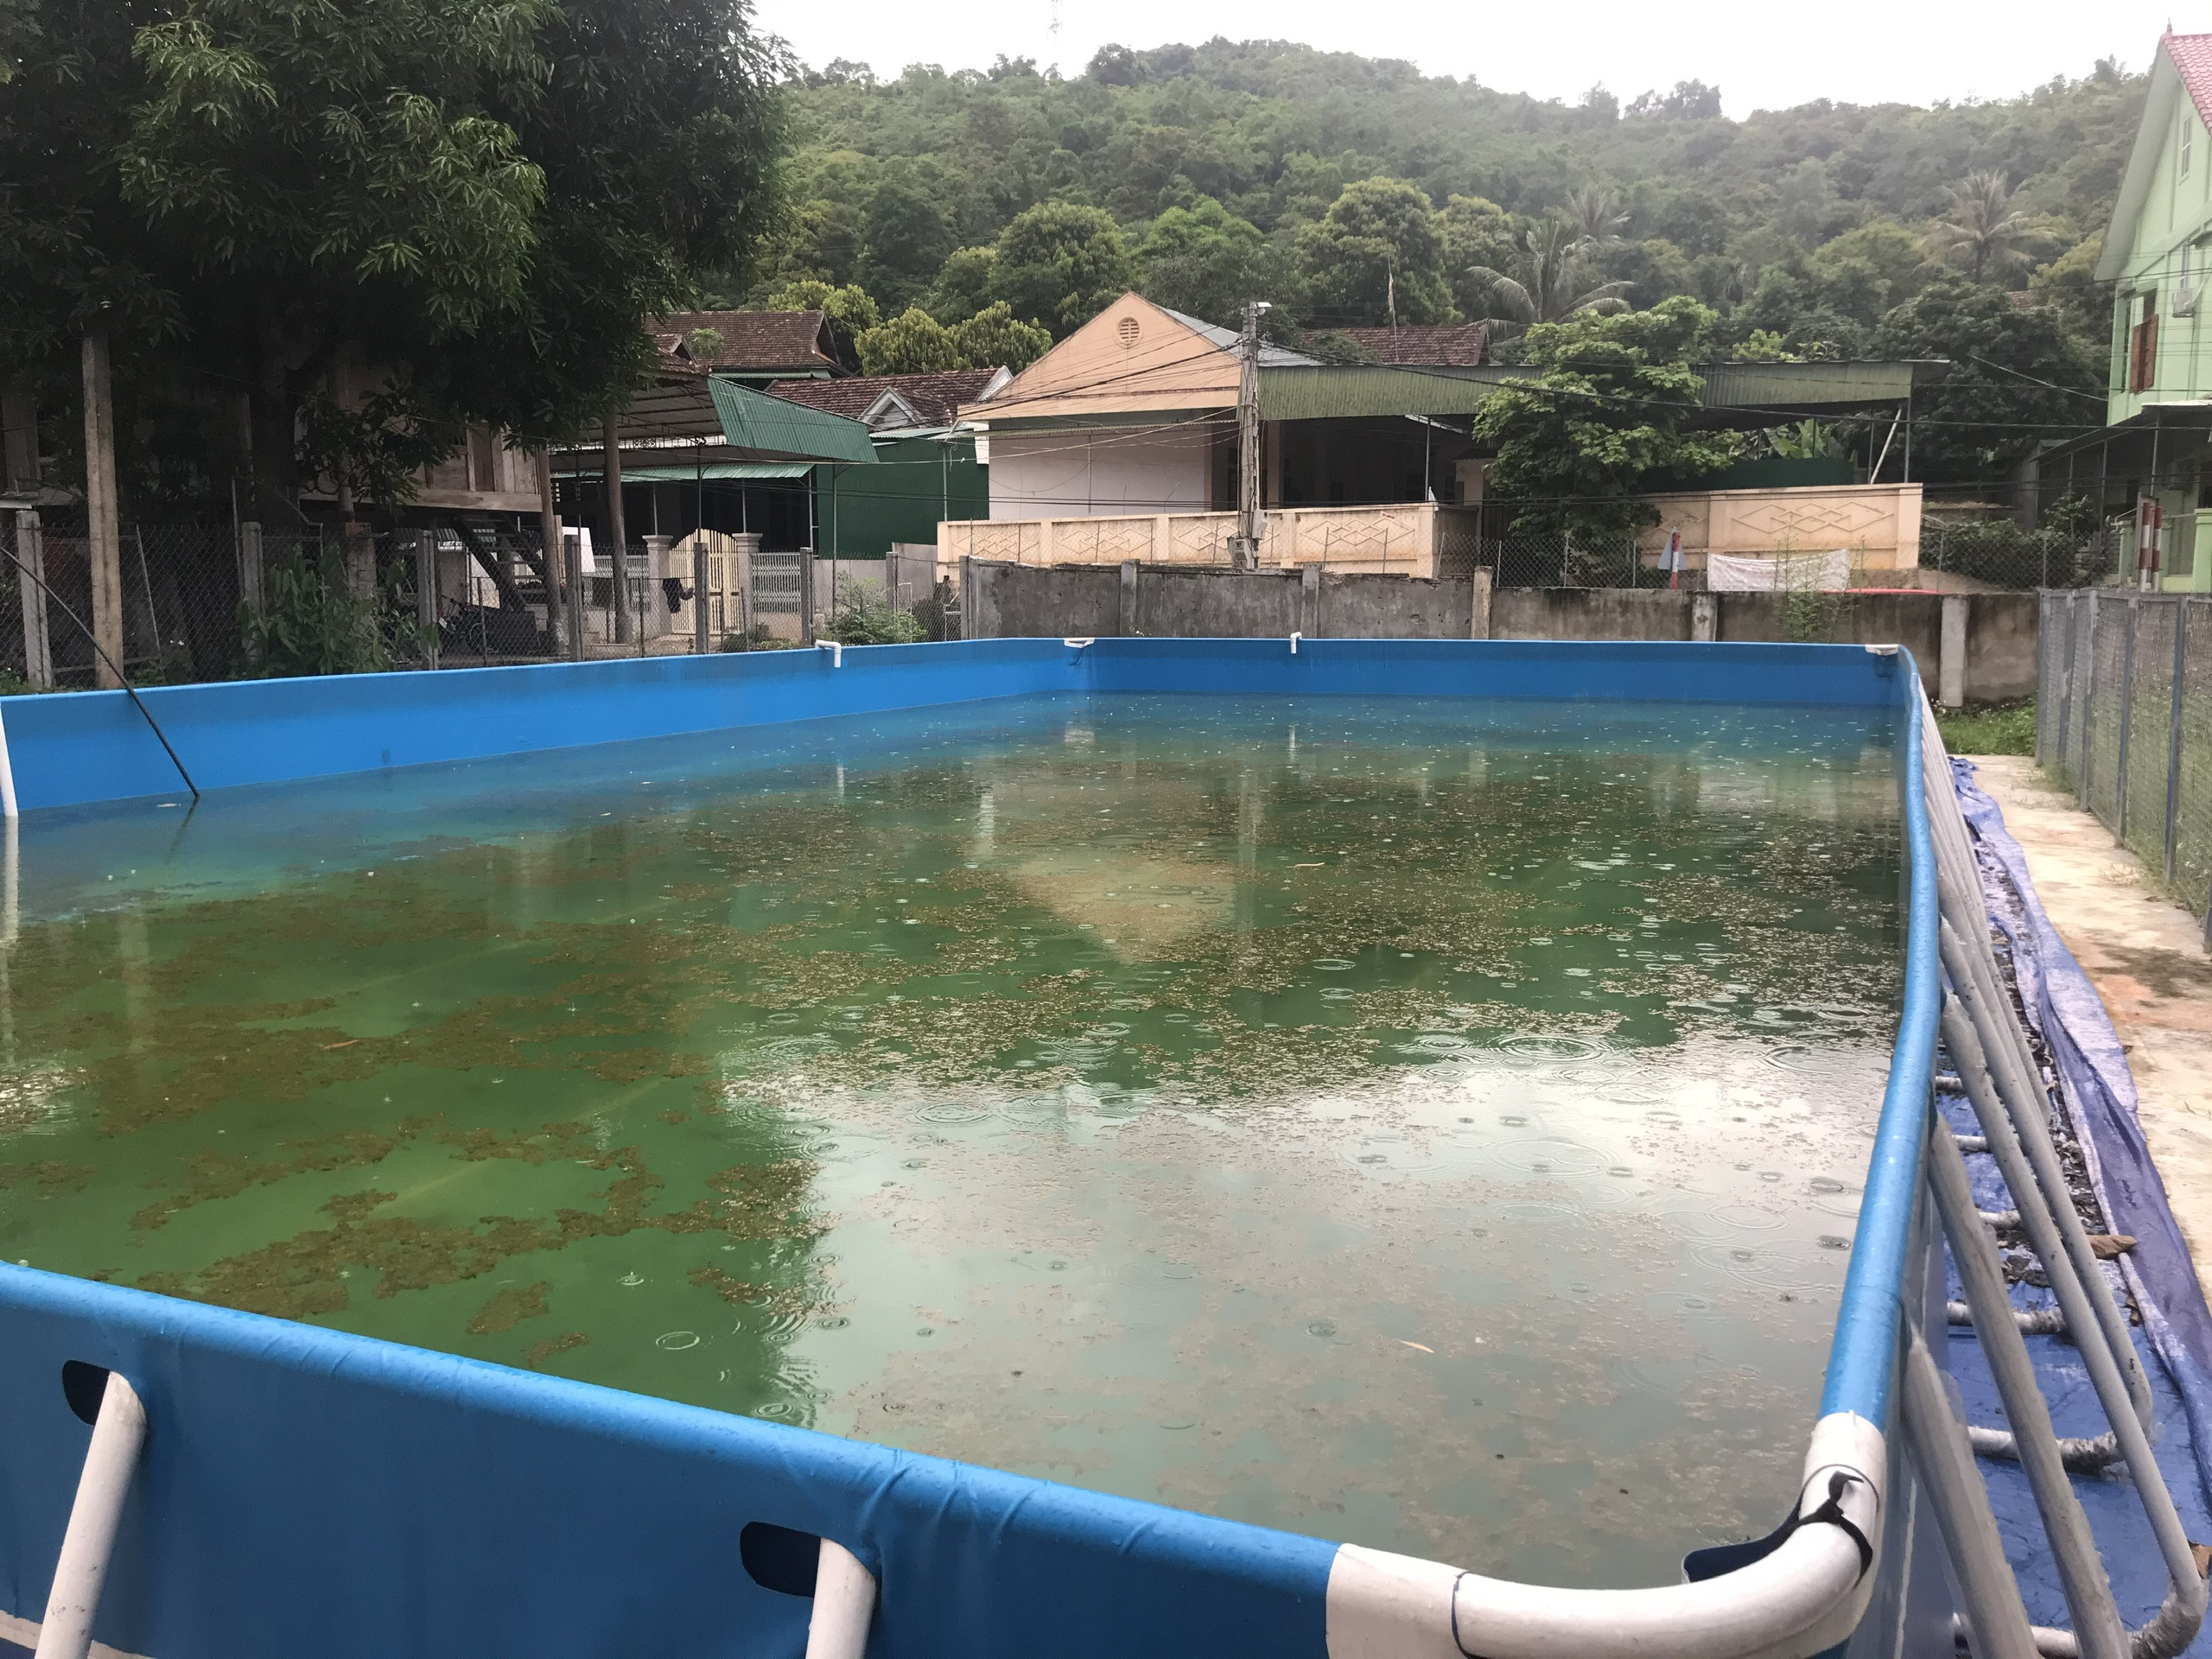 Mặc dù đã trang bị bể bơi lưu động nhưng một số bể bởi ở trường học tại huyện Tương Dương không thể sử dụng thường xuyên vì thiều nước. Ảnh: MH